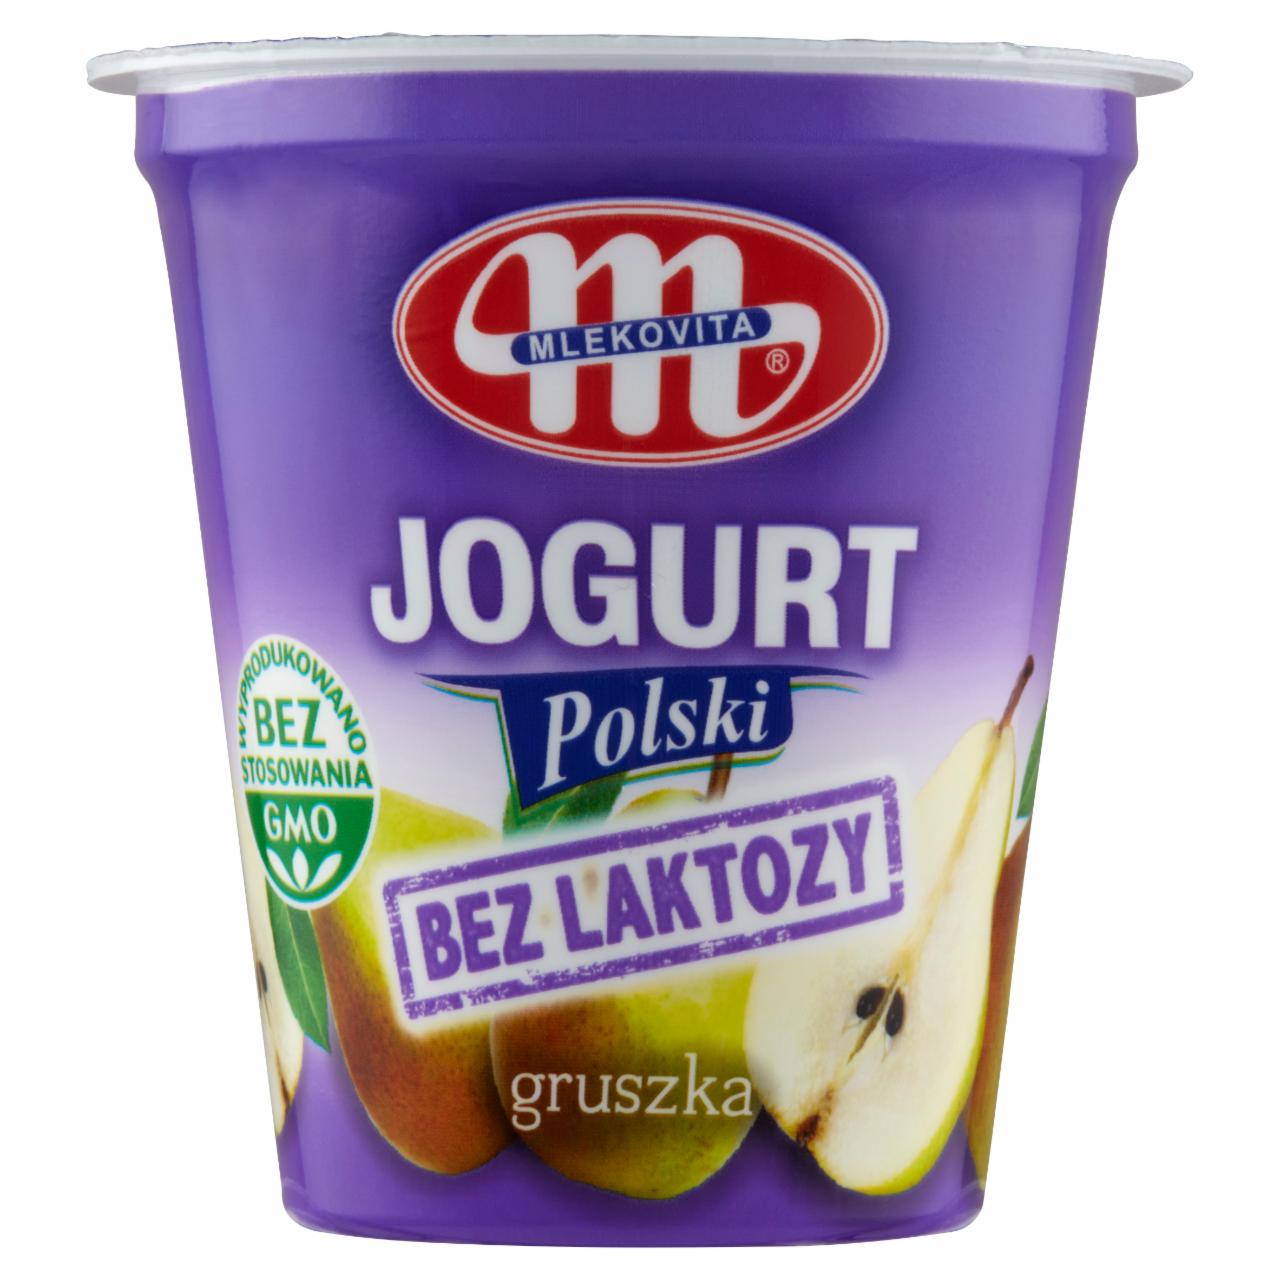 Zdjęcia - Jogurt bez laktozy gruszkowy Polski Mlekovita